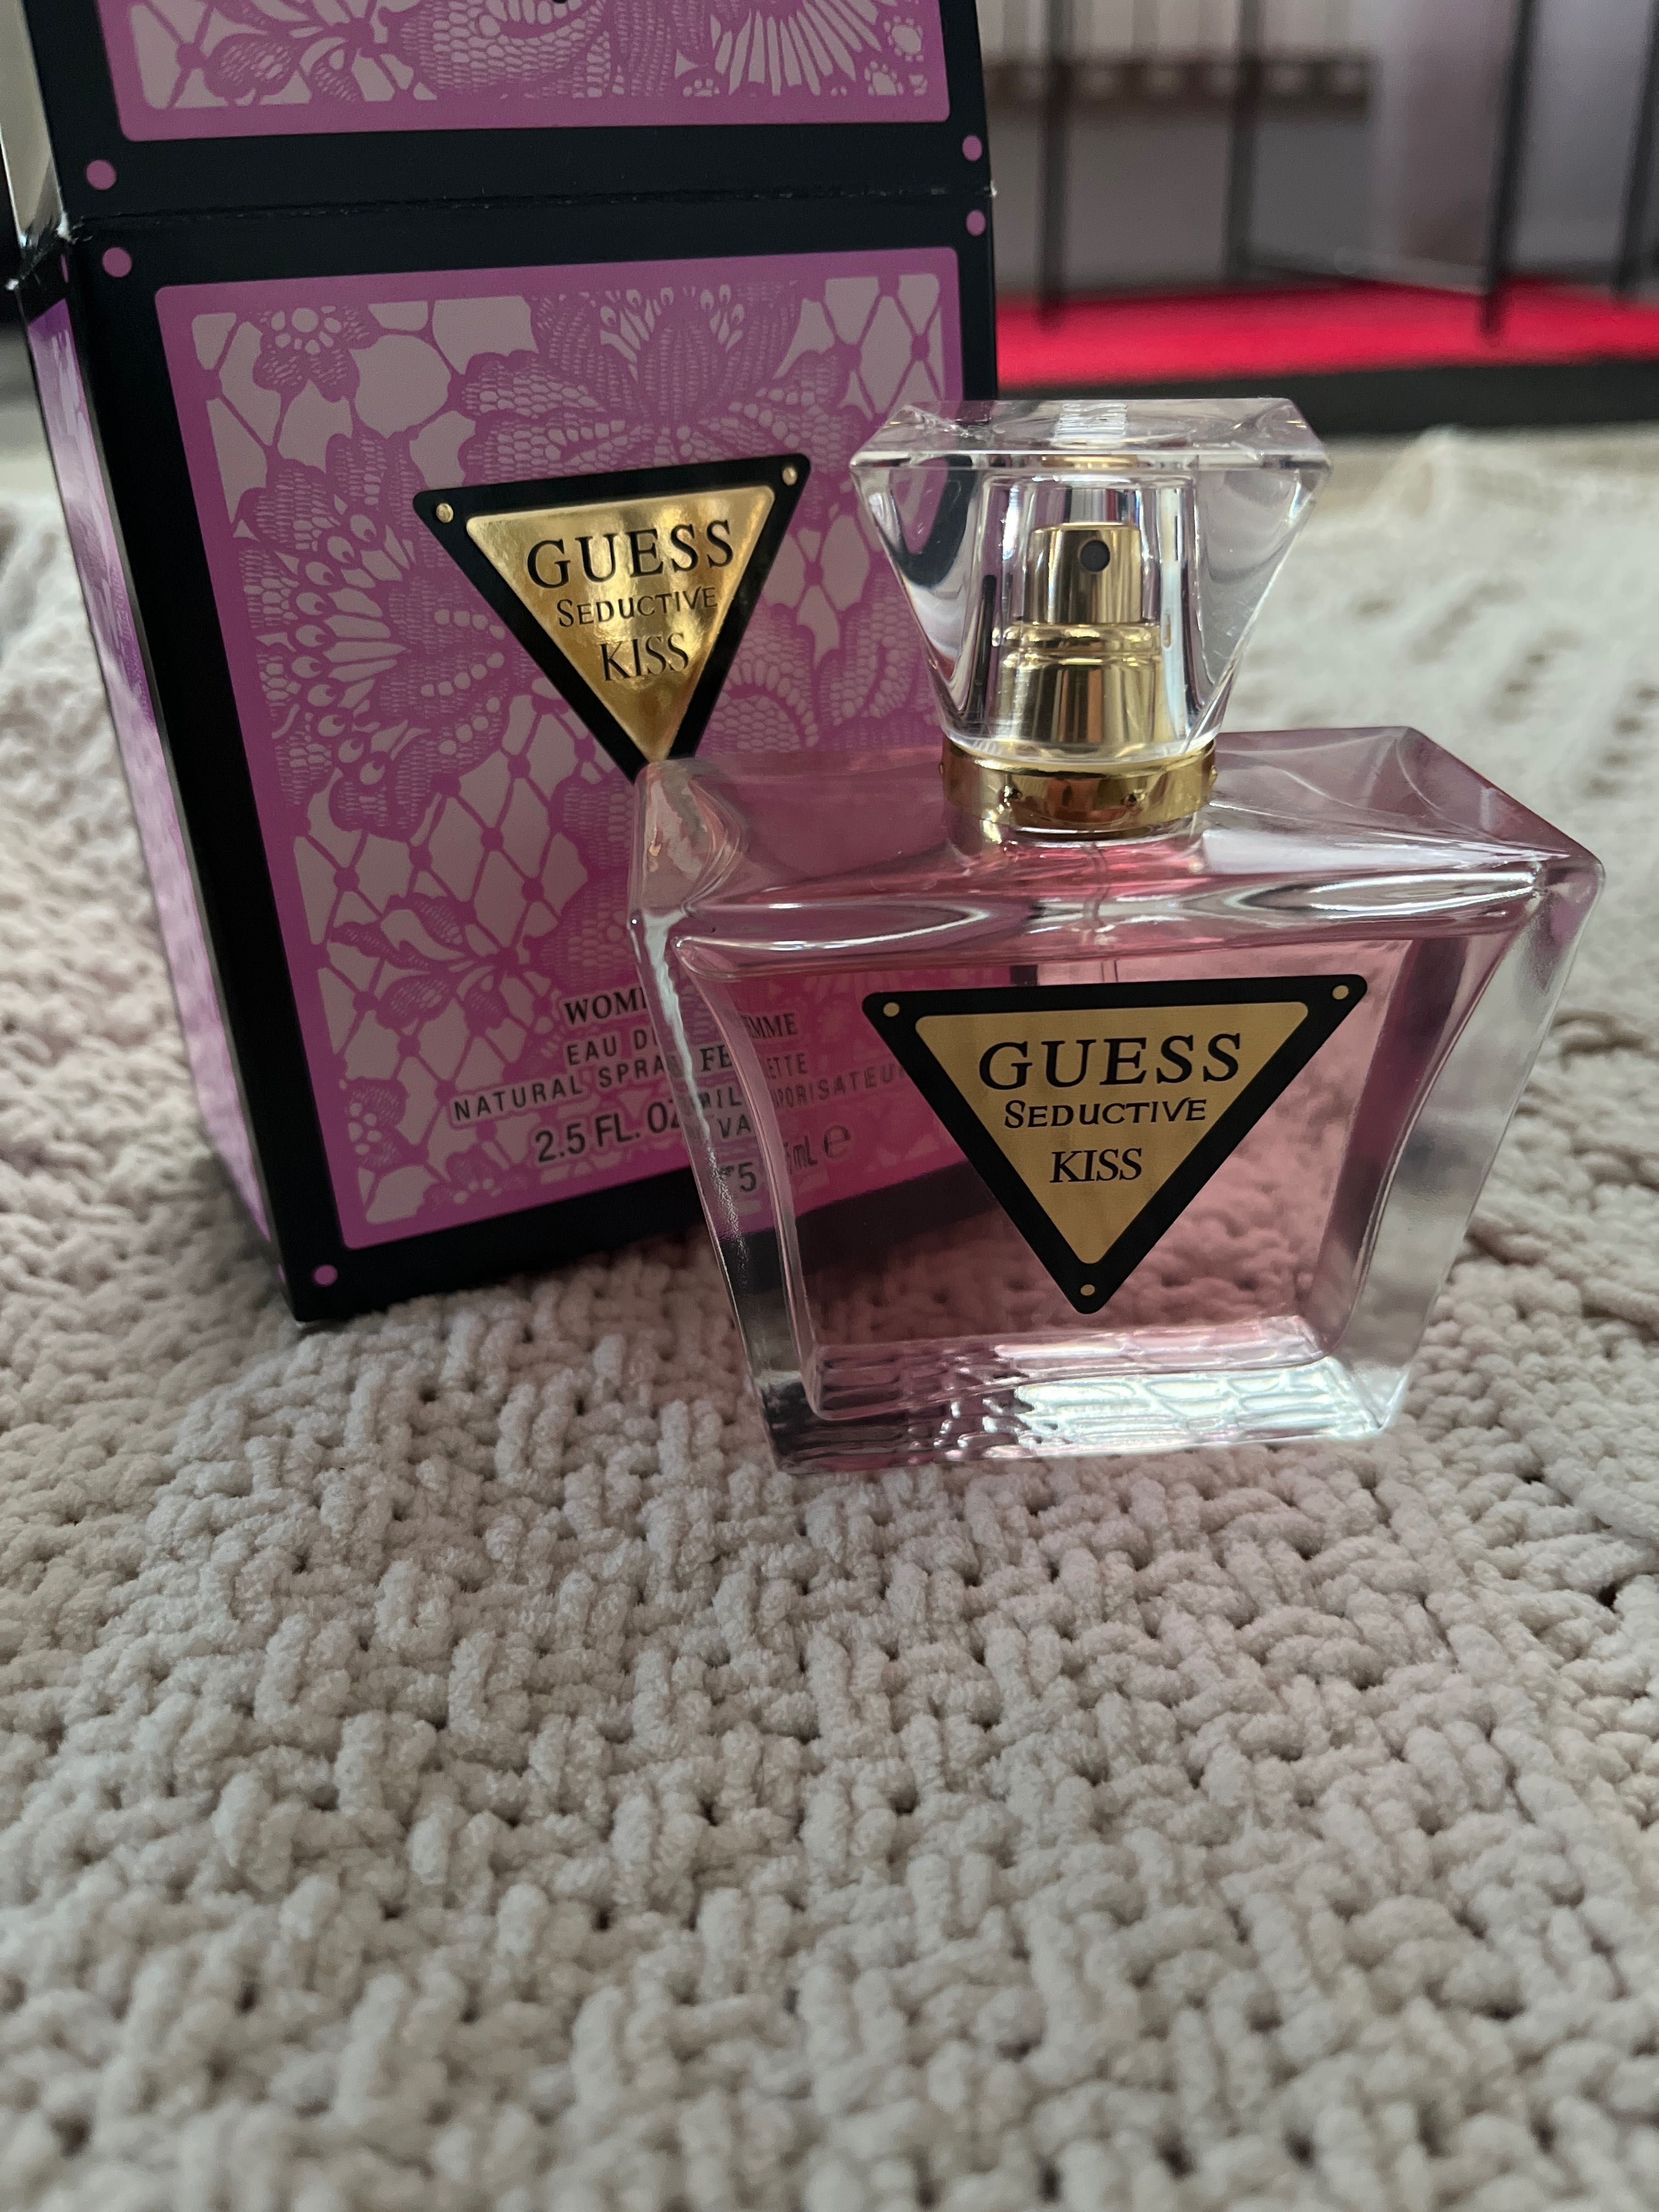 Perfumy GUESS seductive kiss